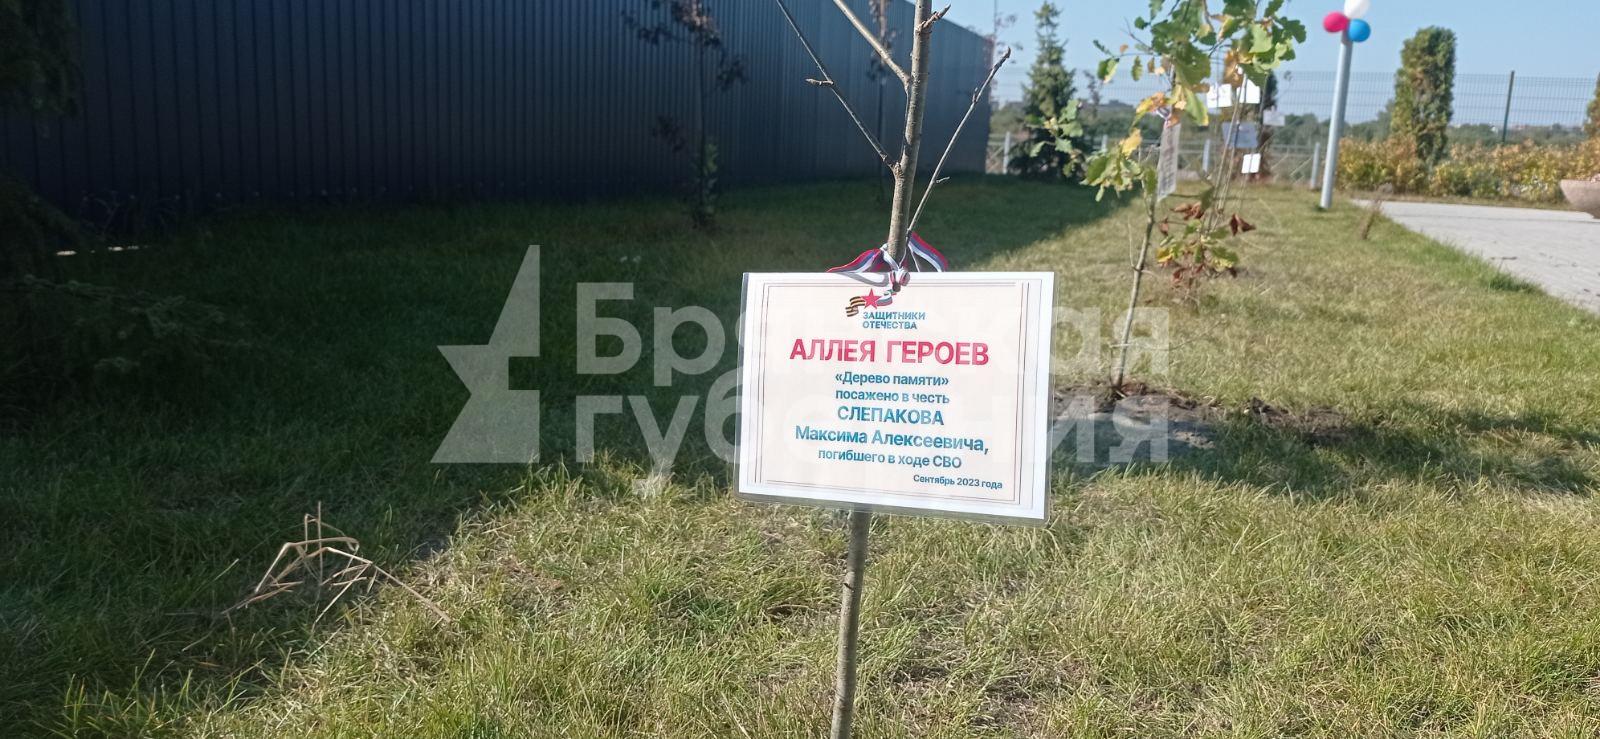 В сквере школы №72 Брянска появилась аллея Героев в память о бойцах СВО